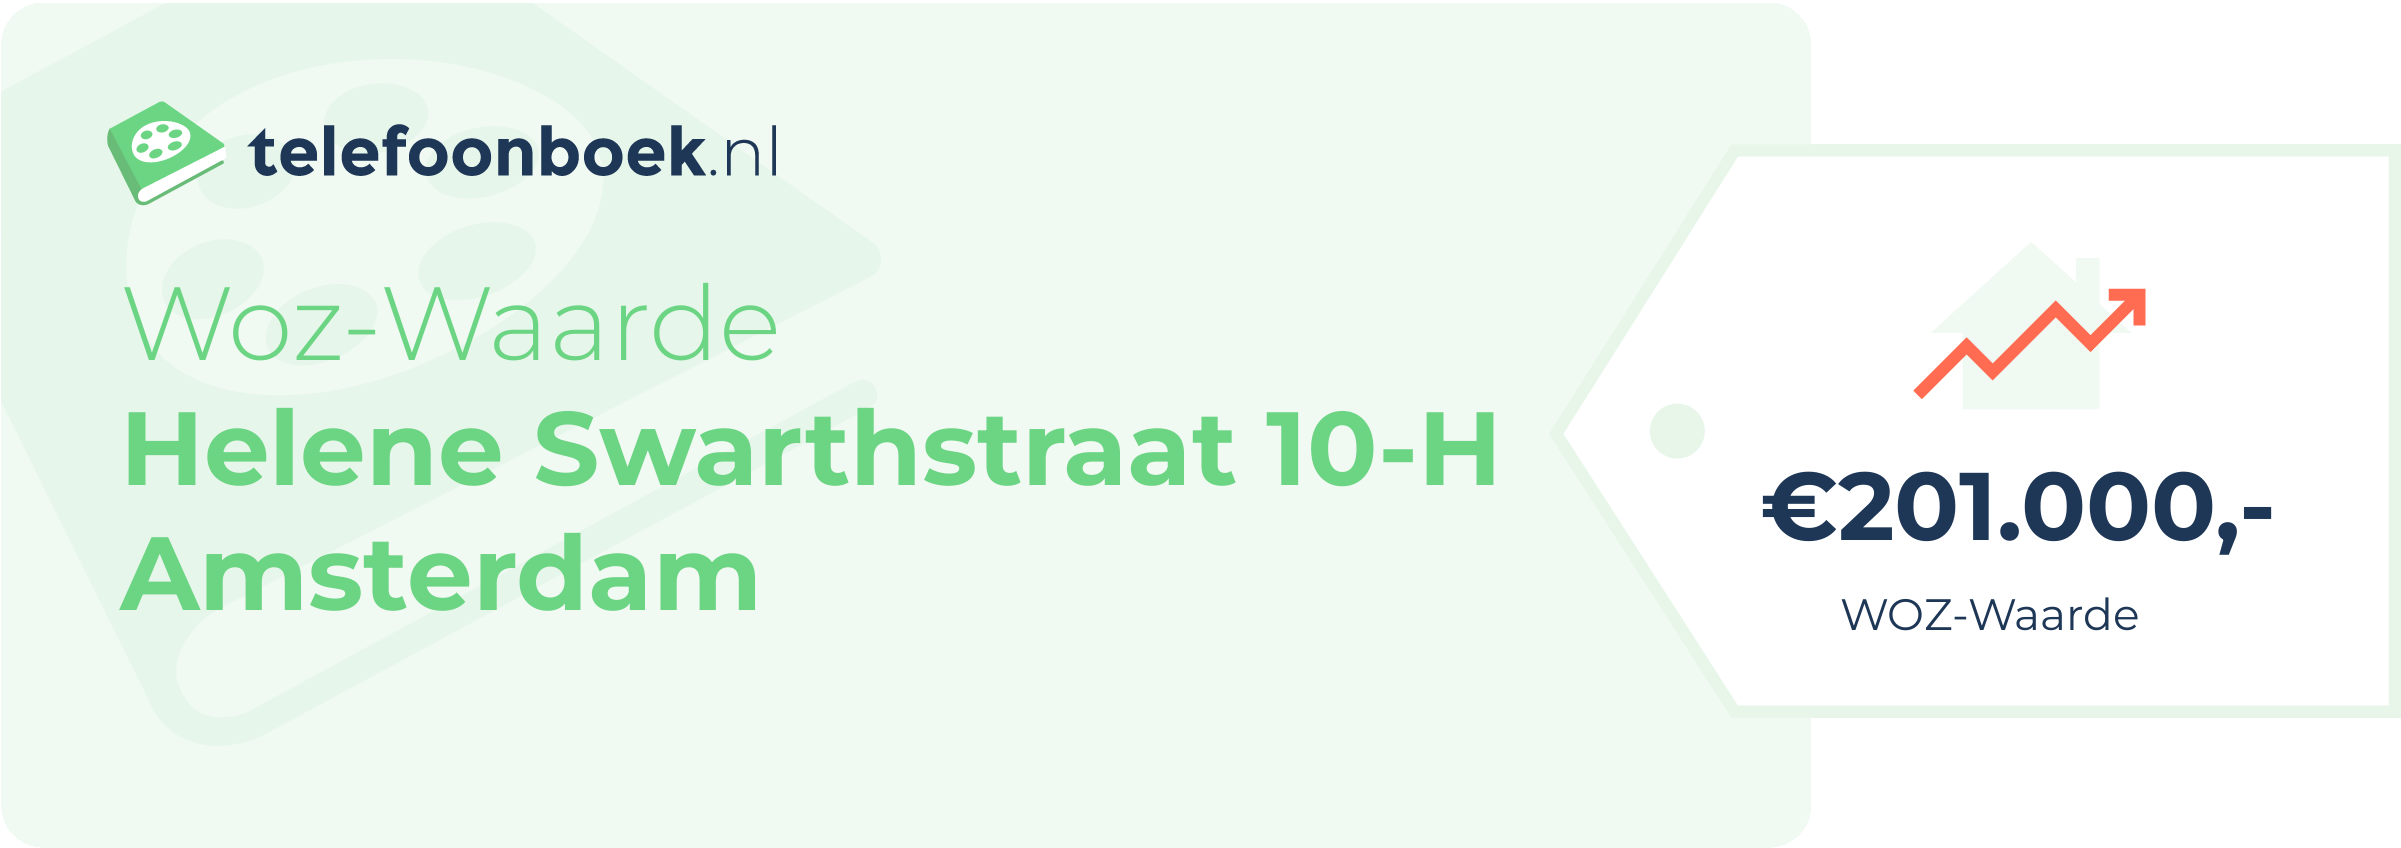 WOZ-waarde Helene Swarthstraat 10-H Amsterdam